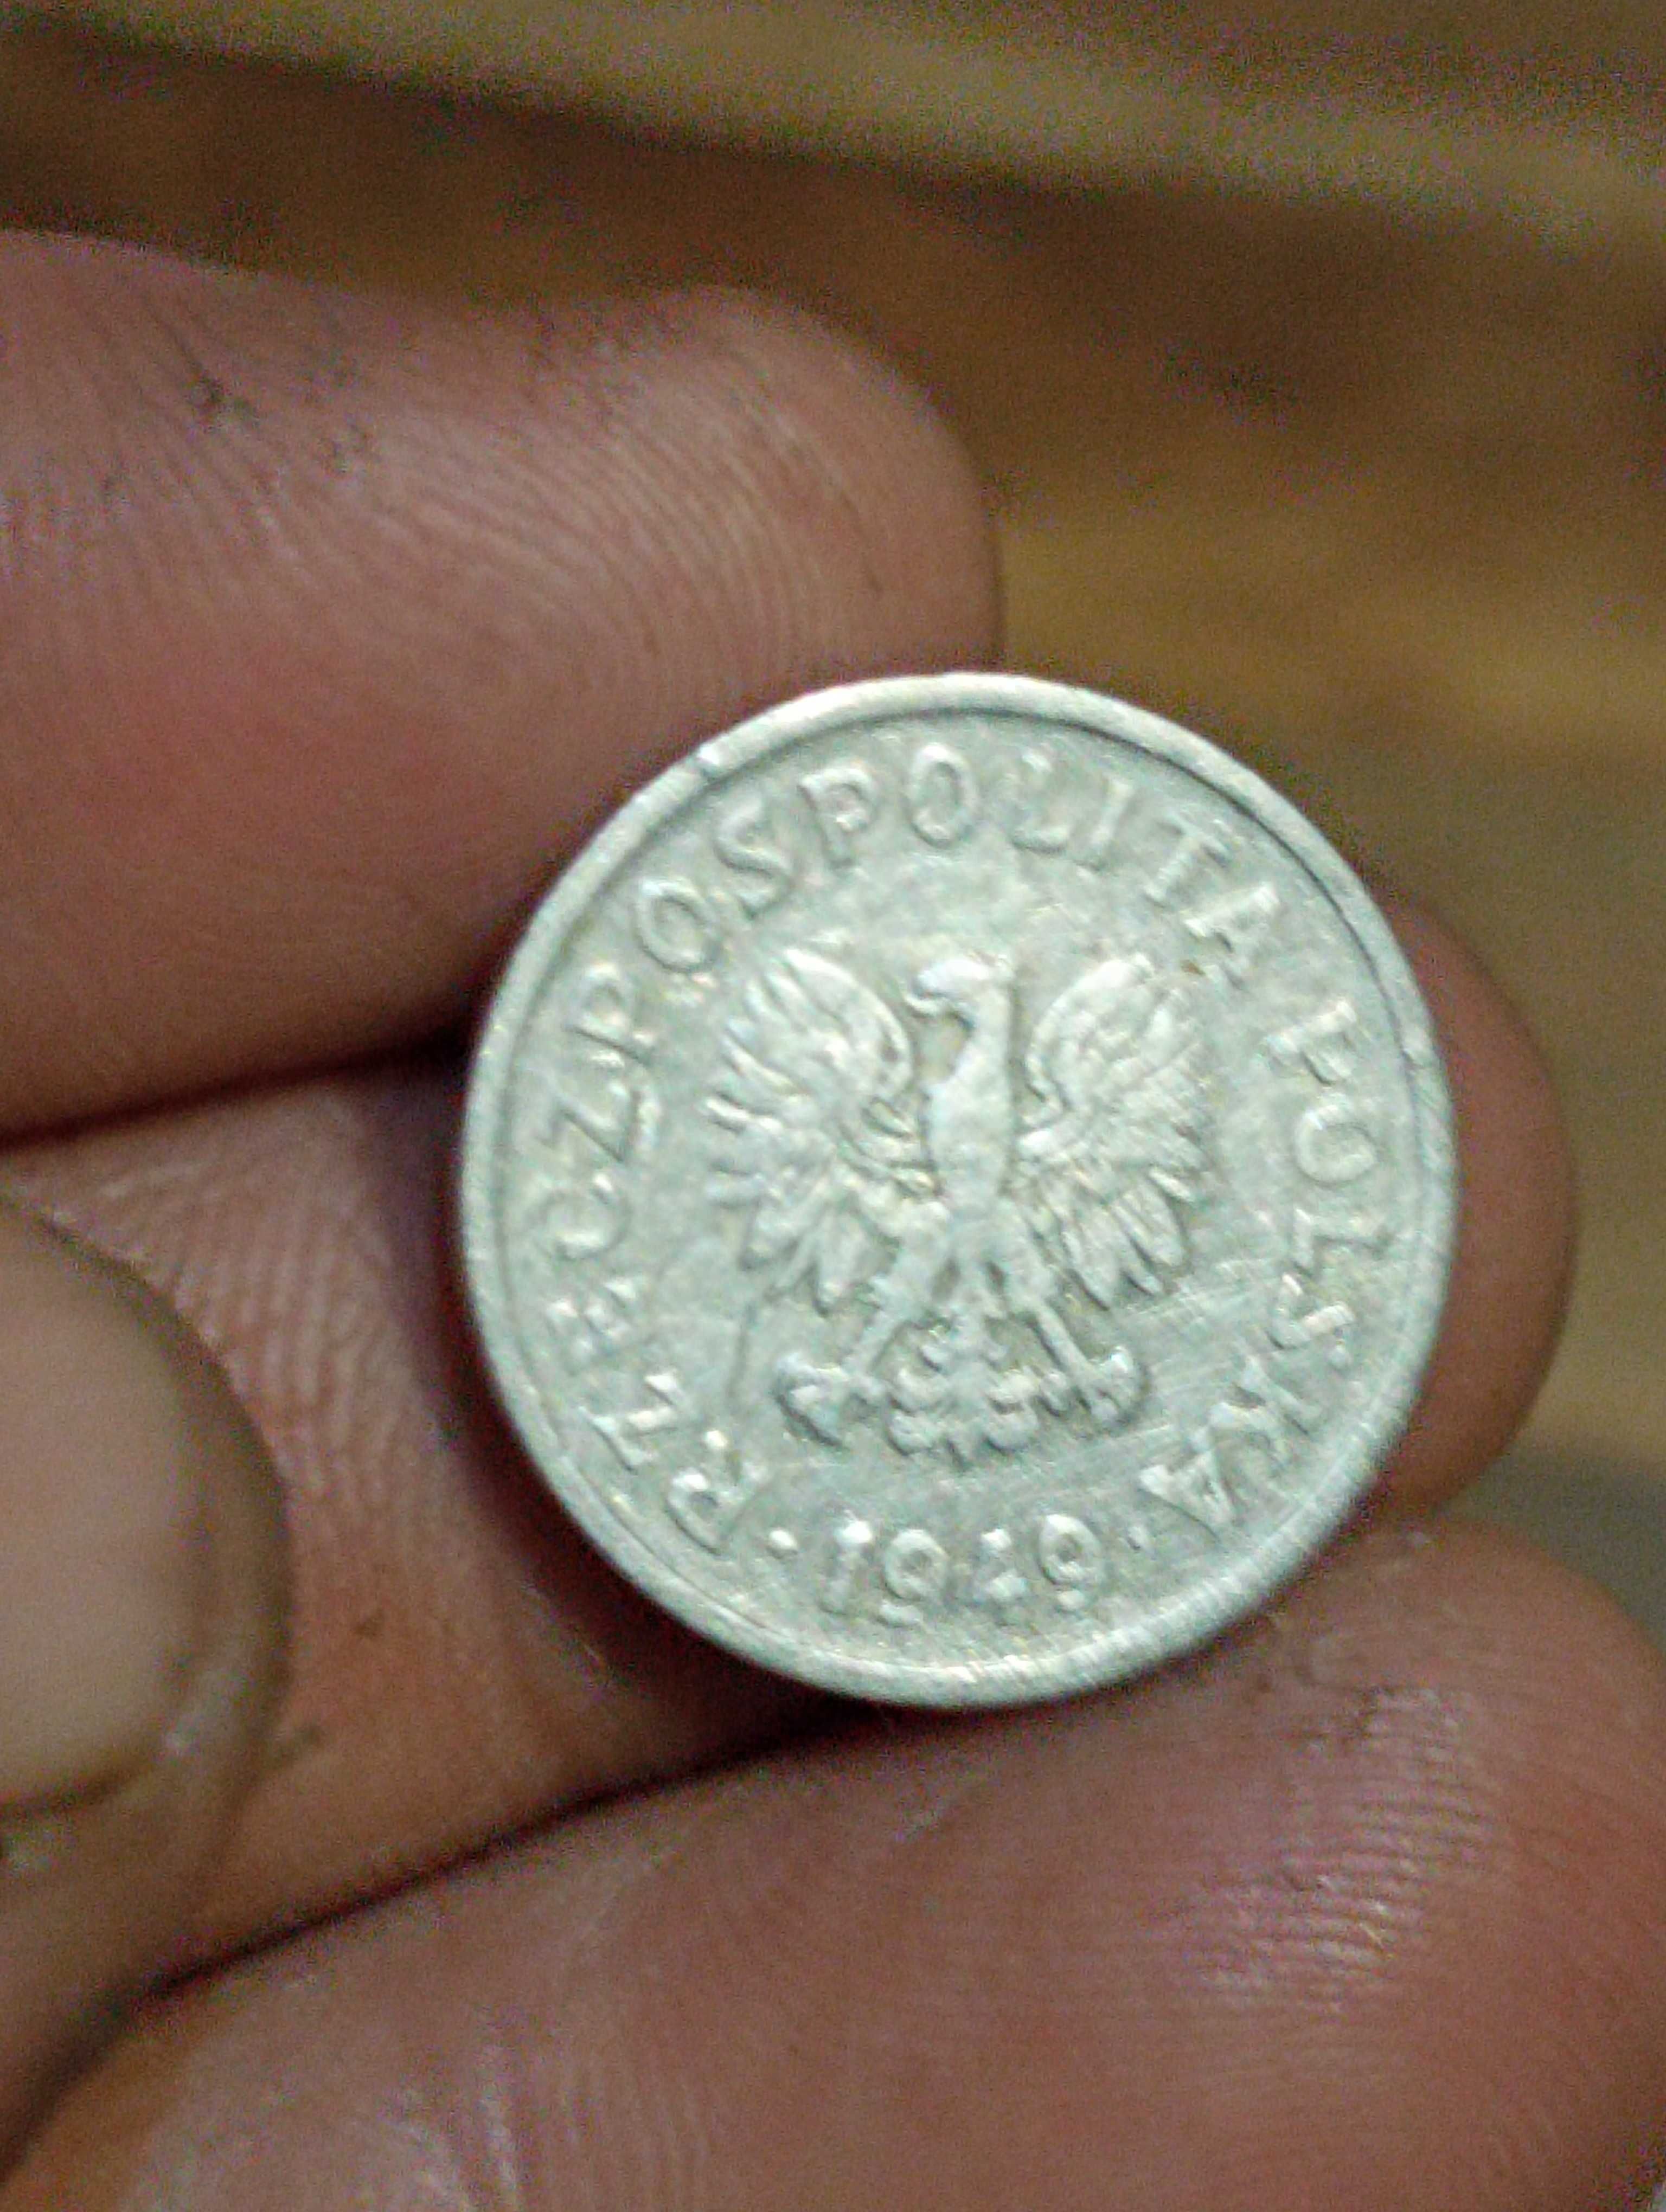 Moneta druga 20 groszy 1949 rok bzm